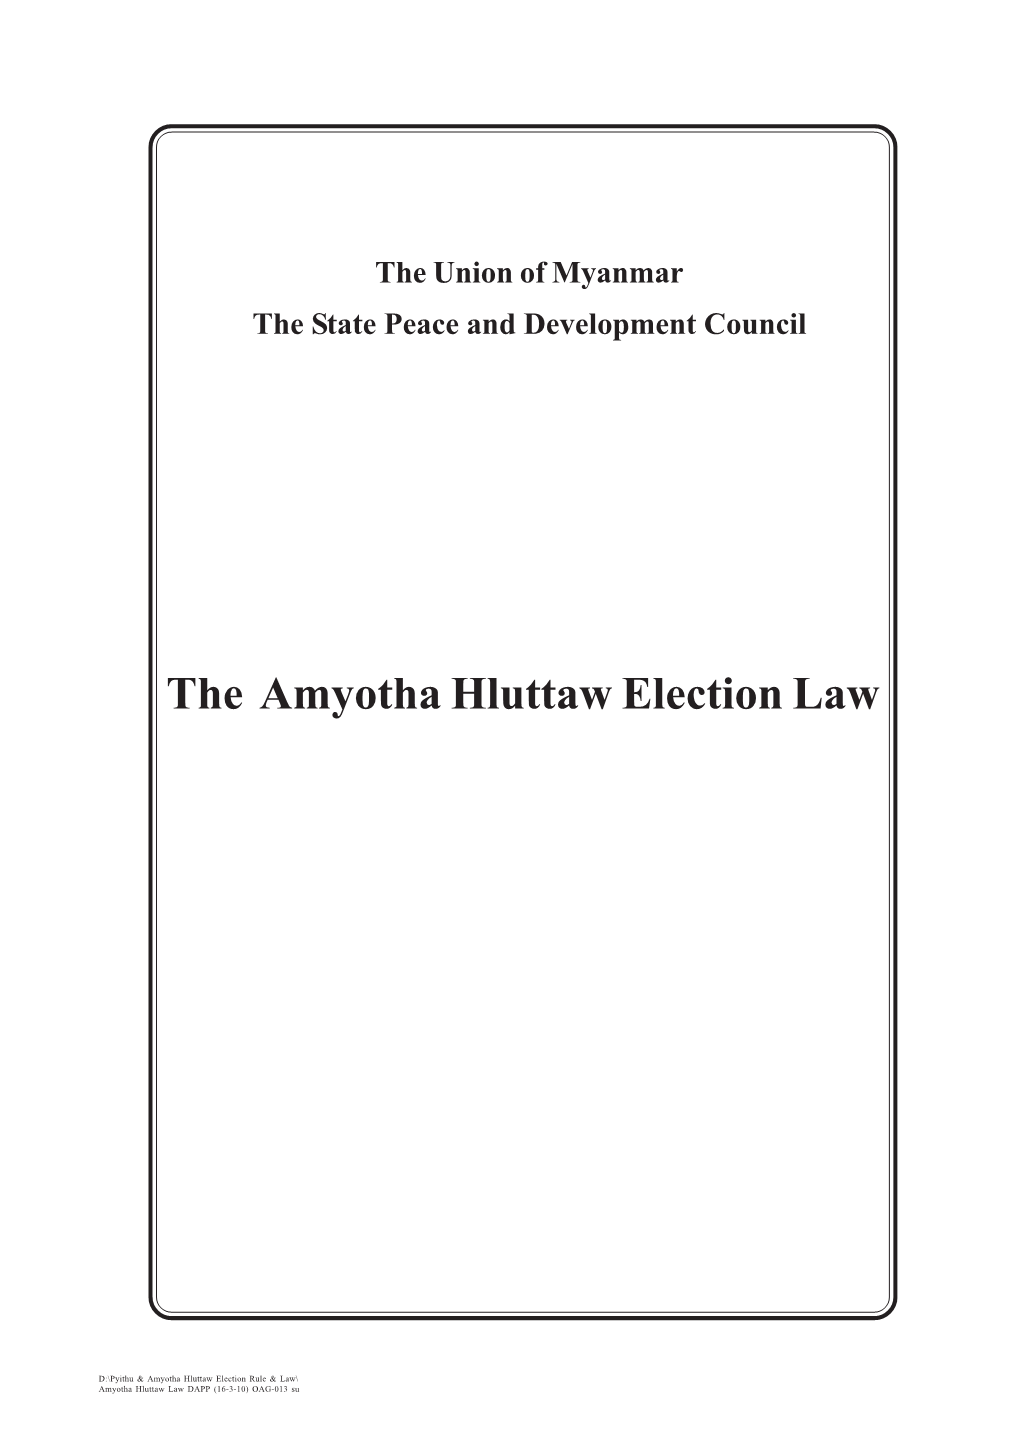 Amyotha Hluttaw Election Law